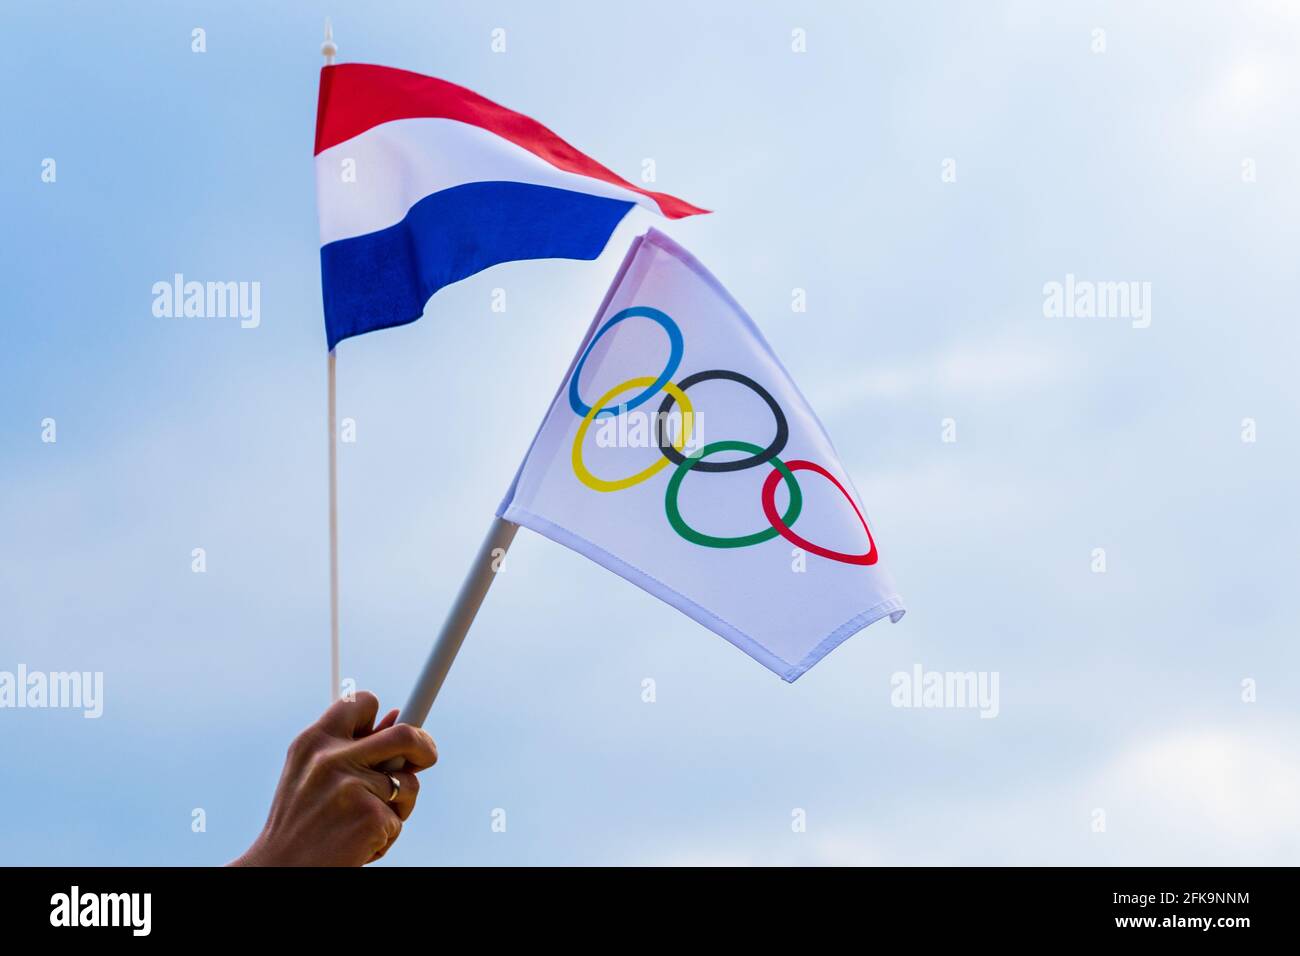 Fan sventolando la bandiera nazionale dei Paesi Bassi e la bandiera olimpica con anelli simbolo olimpiadi. Foto Stock